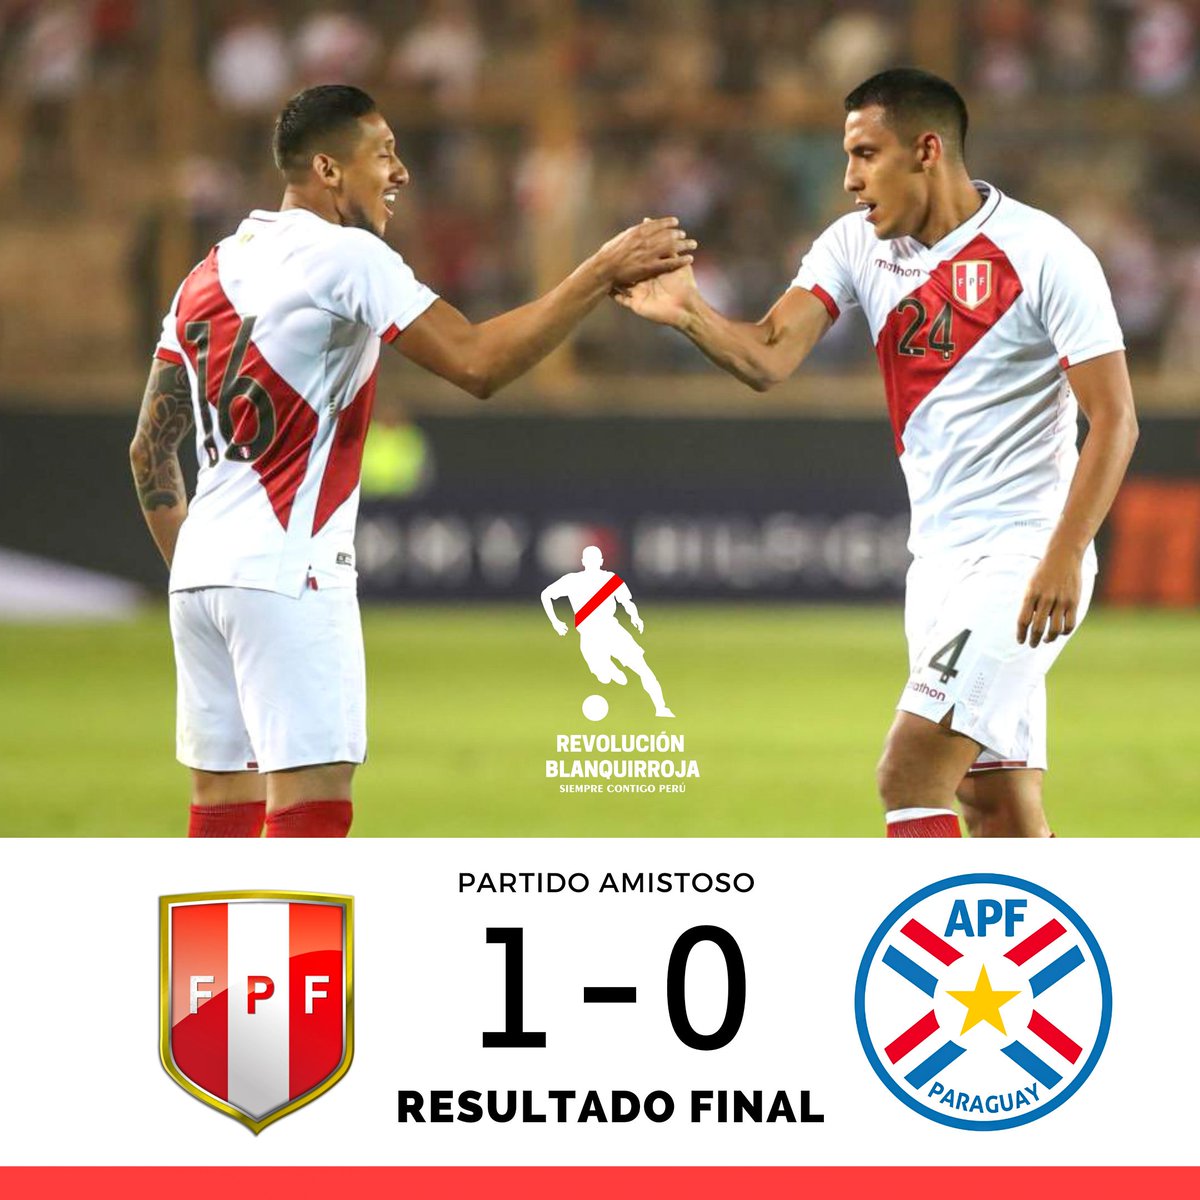 TRIUNFO PERUANO 🇵🇪🔥 Con gol de Alex Valera nuestra Selección venció 1-0 a Paraguay. El próximo partido amistoso será ante Bolivia en Arequipa. 💪🏼🇵🇪 #VamosPerú #SelecciónPeruana